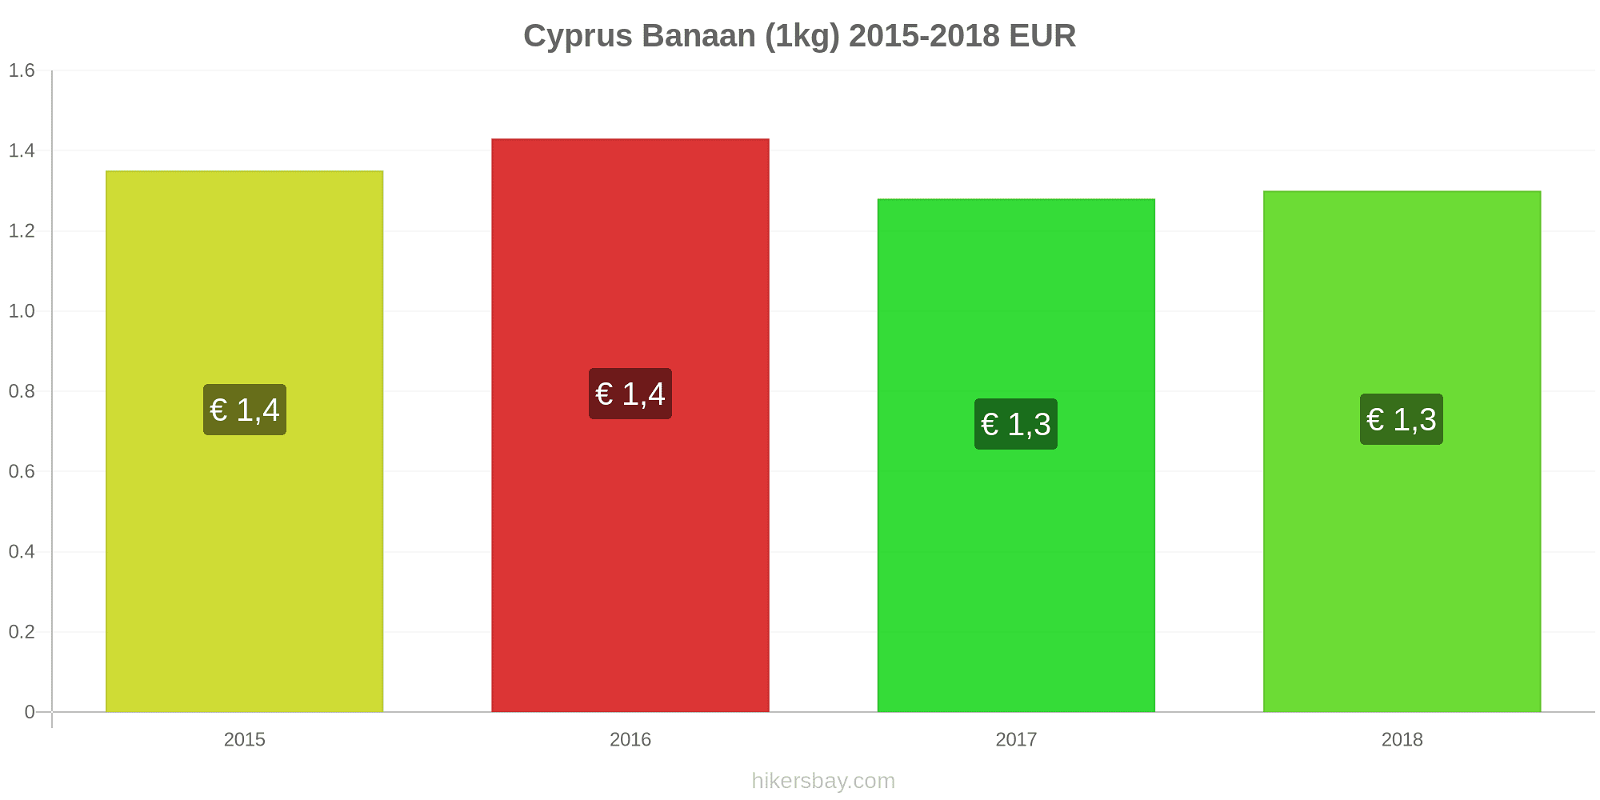 Cyprus prijswijzigingen Bananen (1kg) hikersbay.com